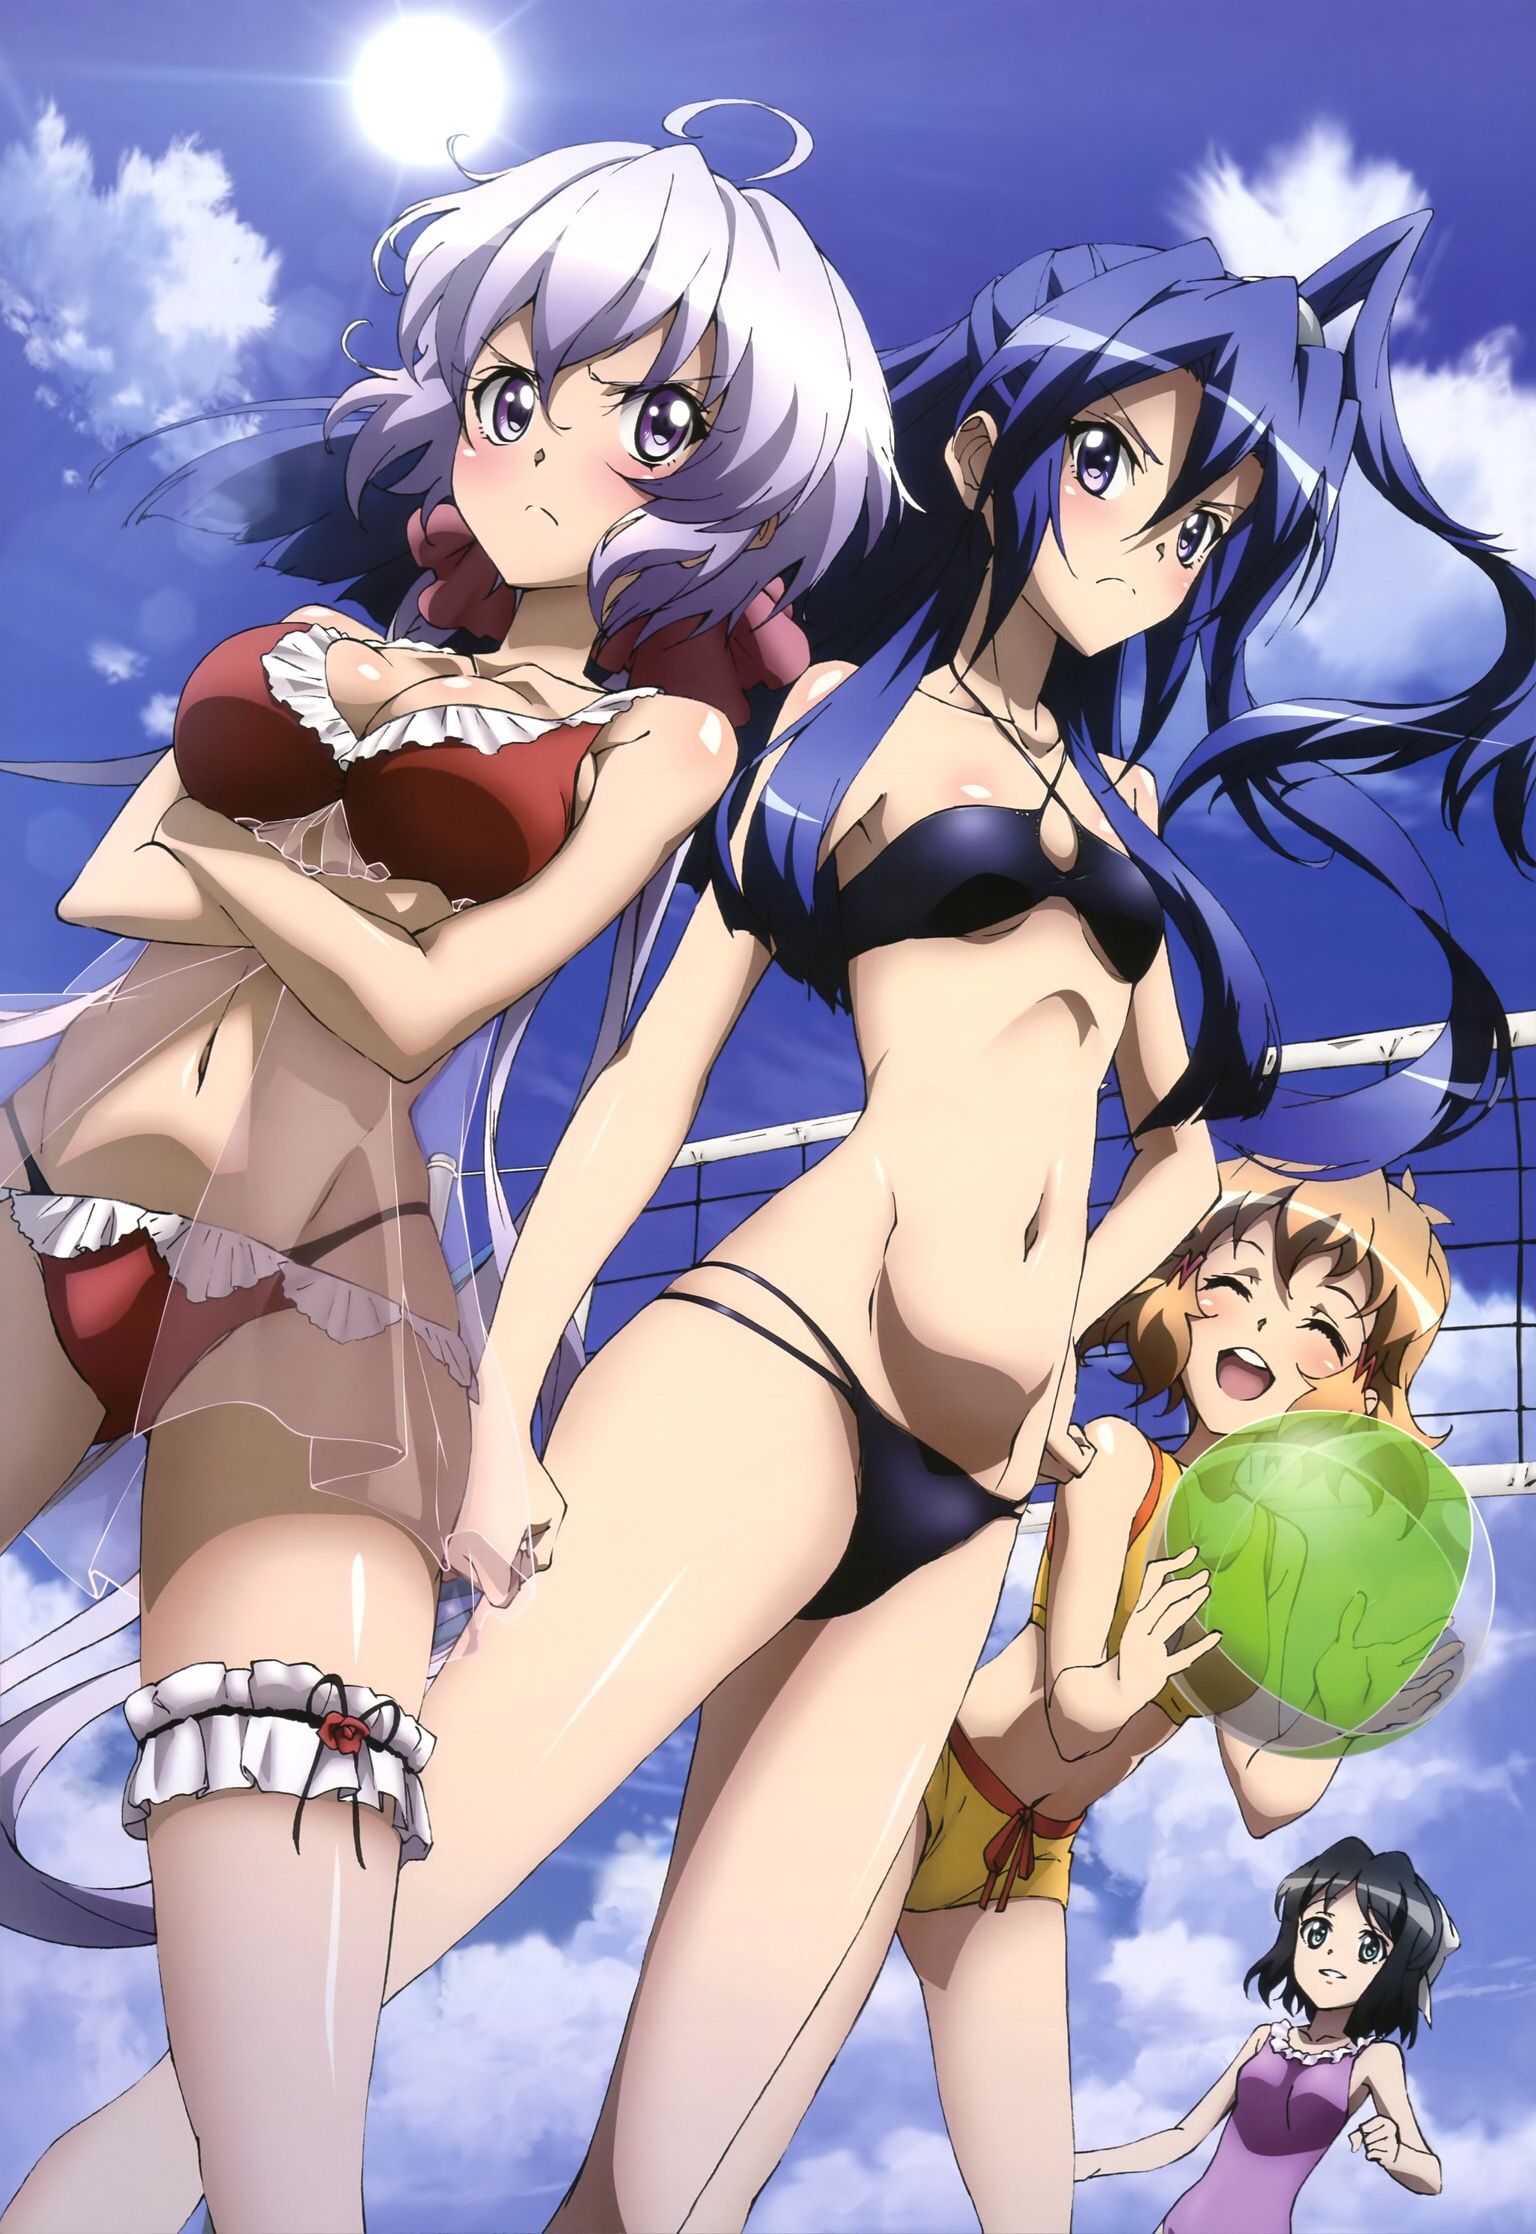 【Image】Symphogear is a erotic anime wwwwwww 7